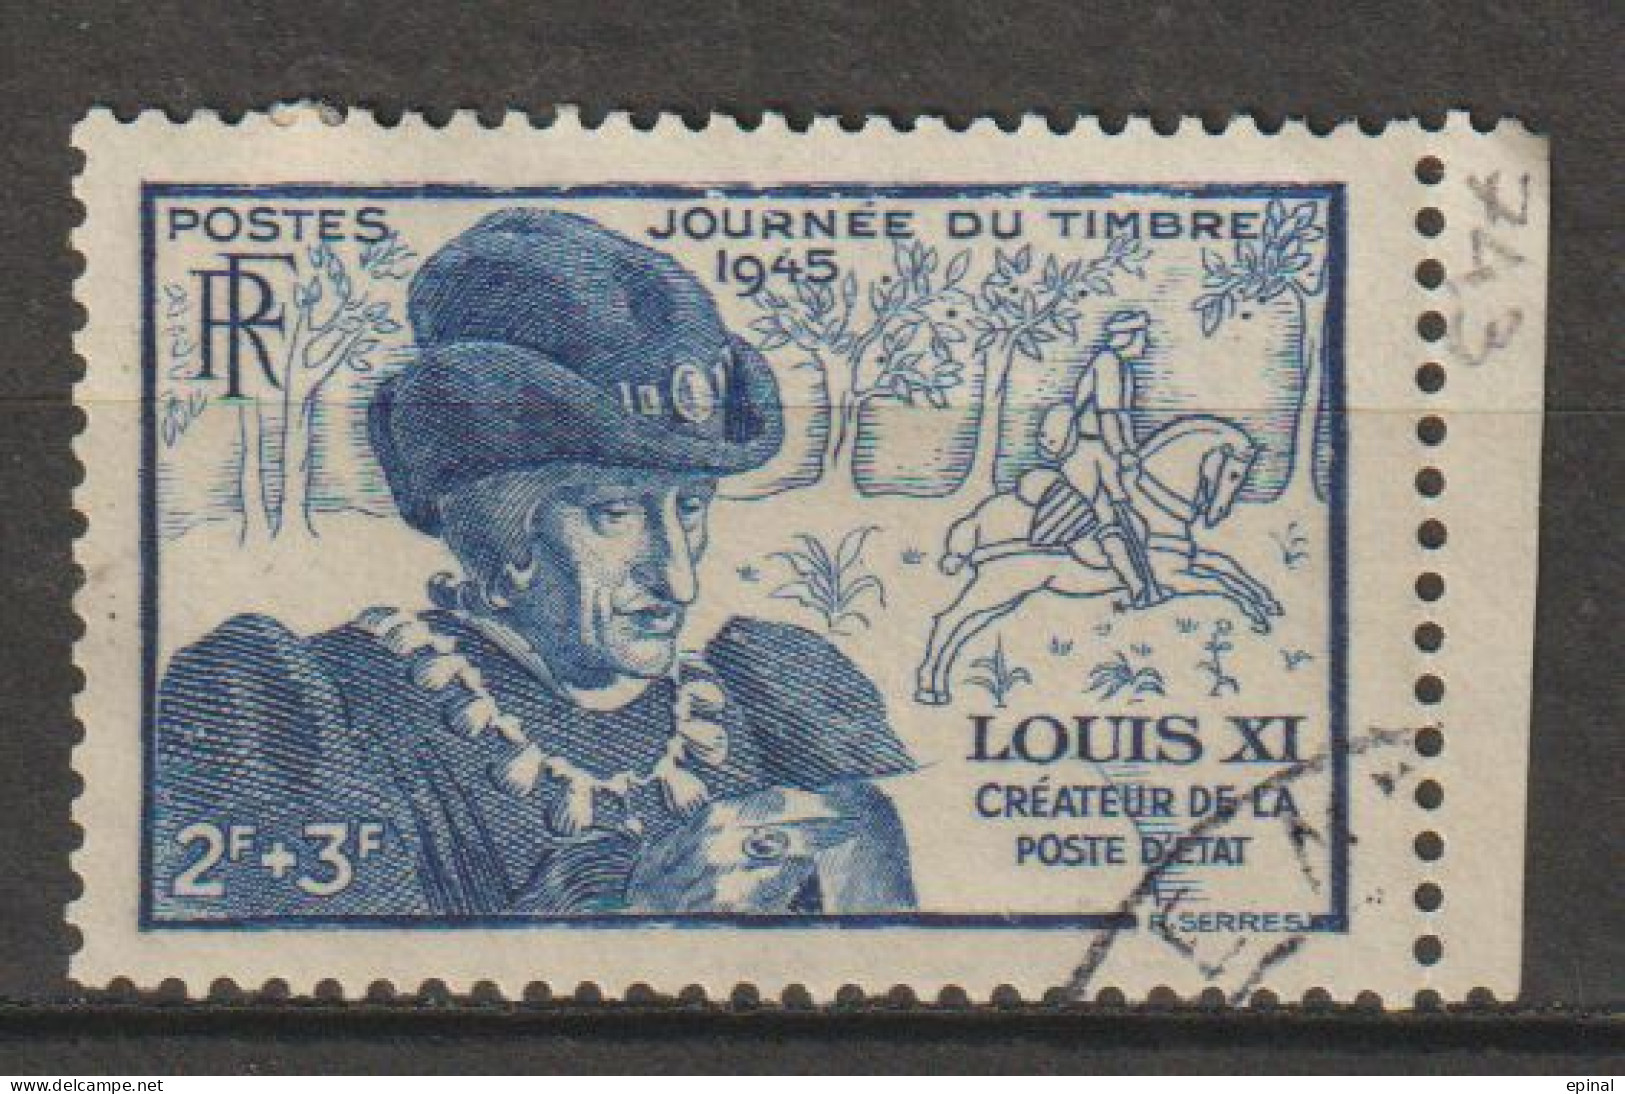 FRANCE : N° 743 Oblitéré (Journée Du Timbre) - PRIX FIXE - - Used Stamps